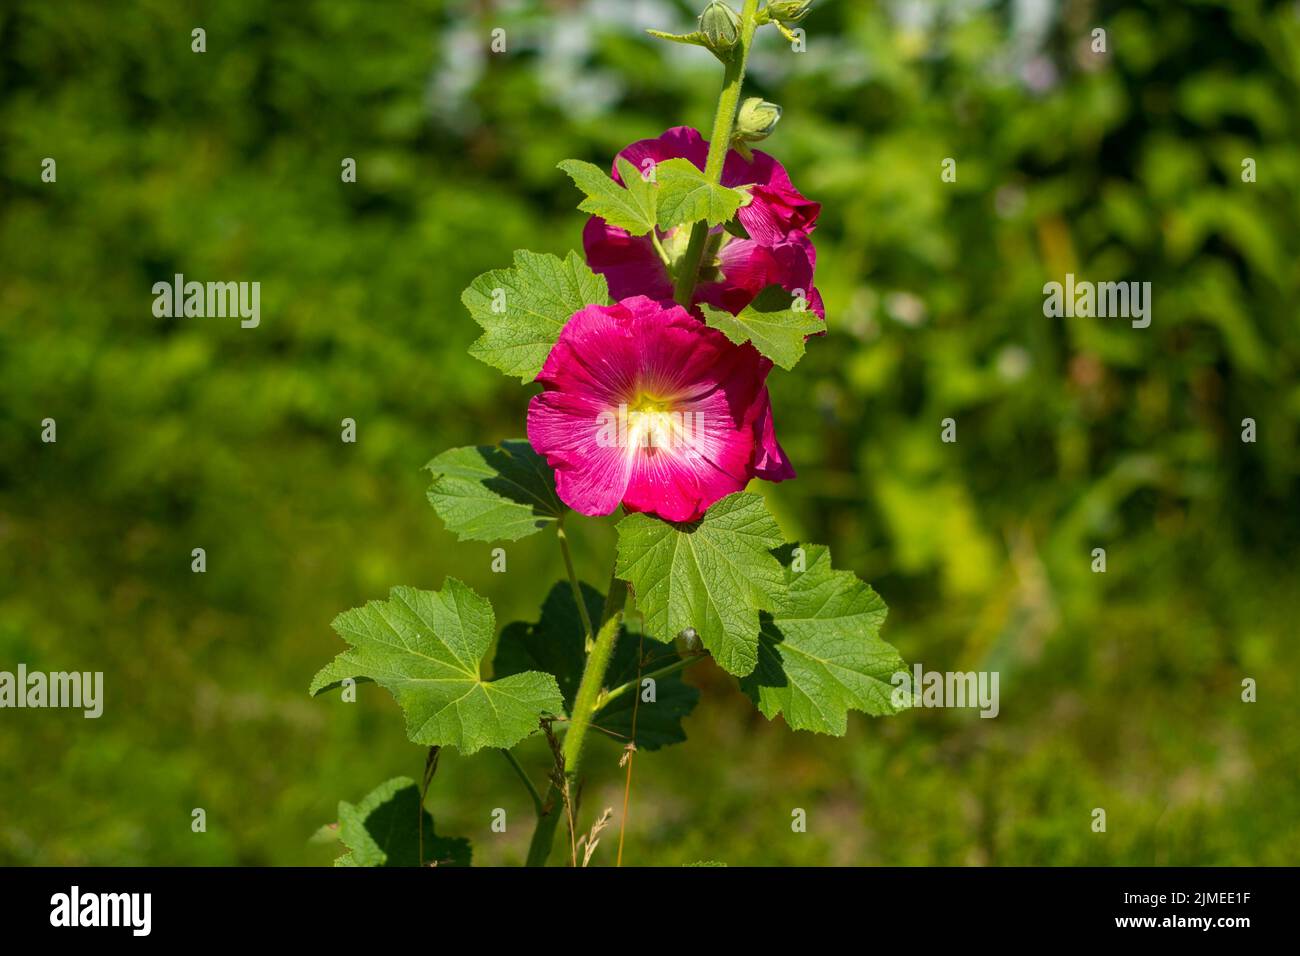 Flor de malva roja, Alcea rosea, floreciendo en el jardín. Foto de stock